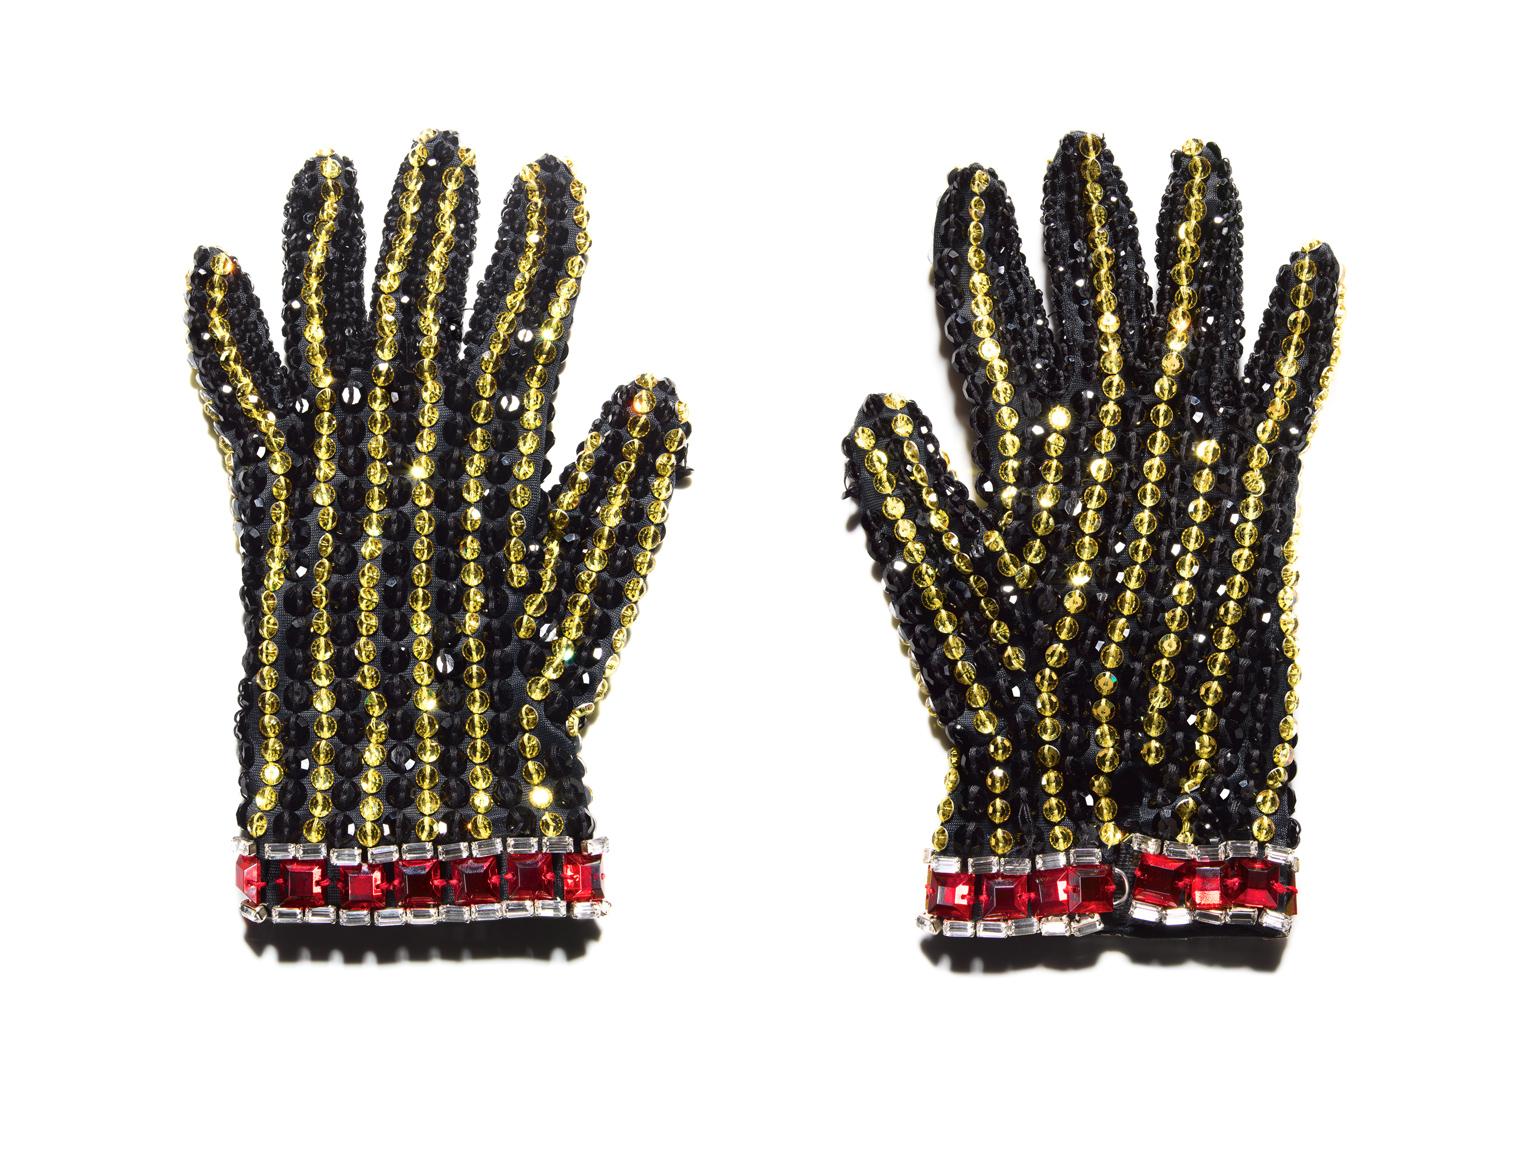 ein sehr detailliertes Stillleben des kultigen Pailletten- und Strasshandschuhs des King of Pop

Schwarzer Handschuh (Michael Jackson) von Tom Schierlitz

64 x 48 Zoll (163 x 122cm)
signierte Auflage von 7 Stück

40 x 30 Zoll  (102 x 76cm)
signierte